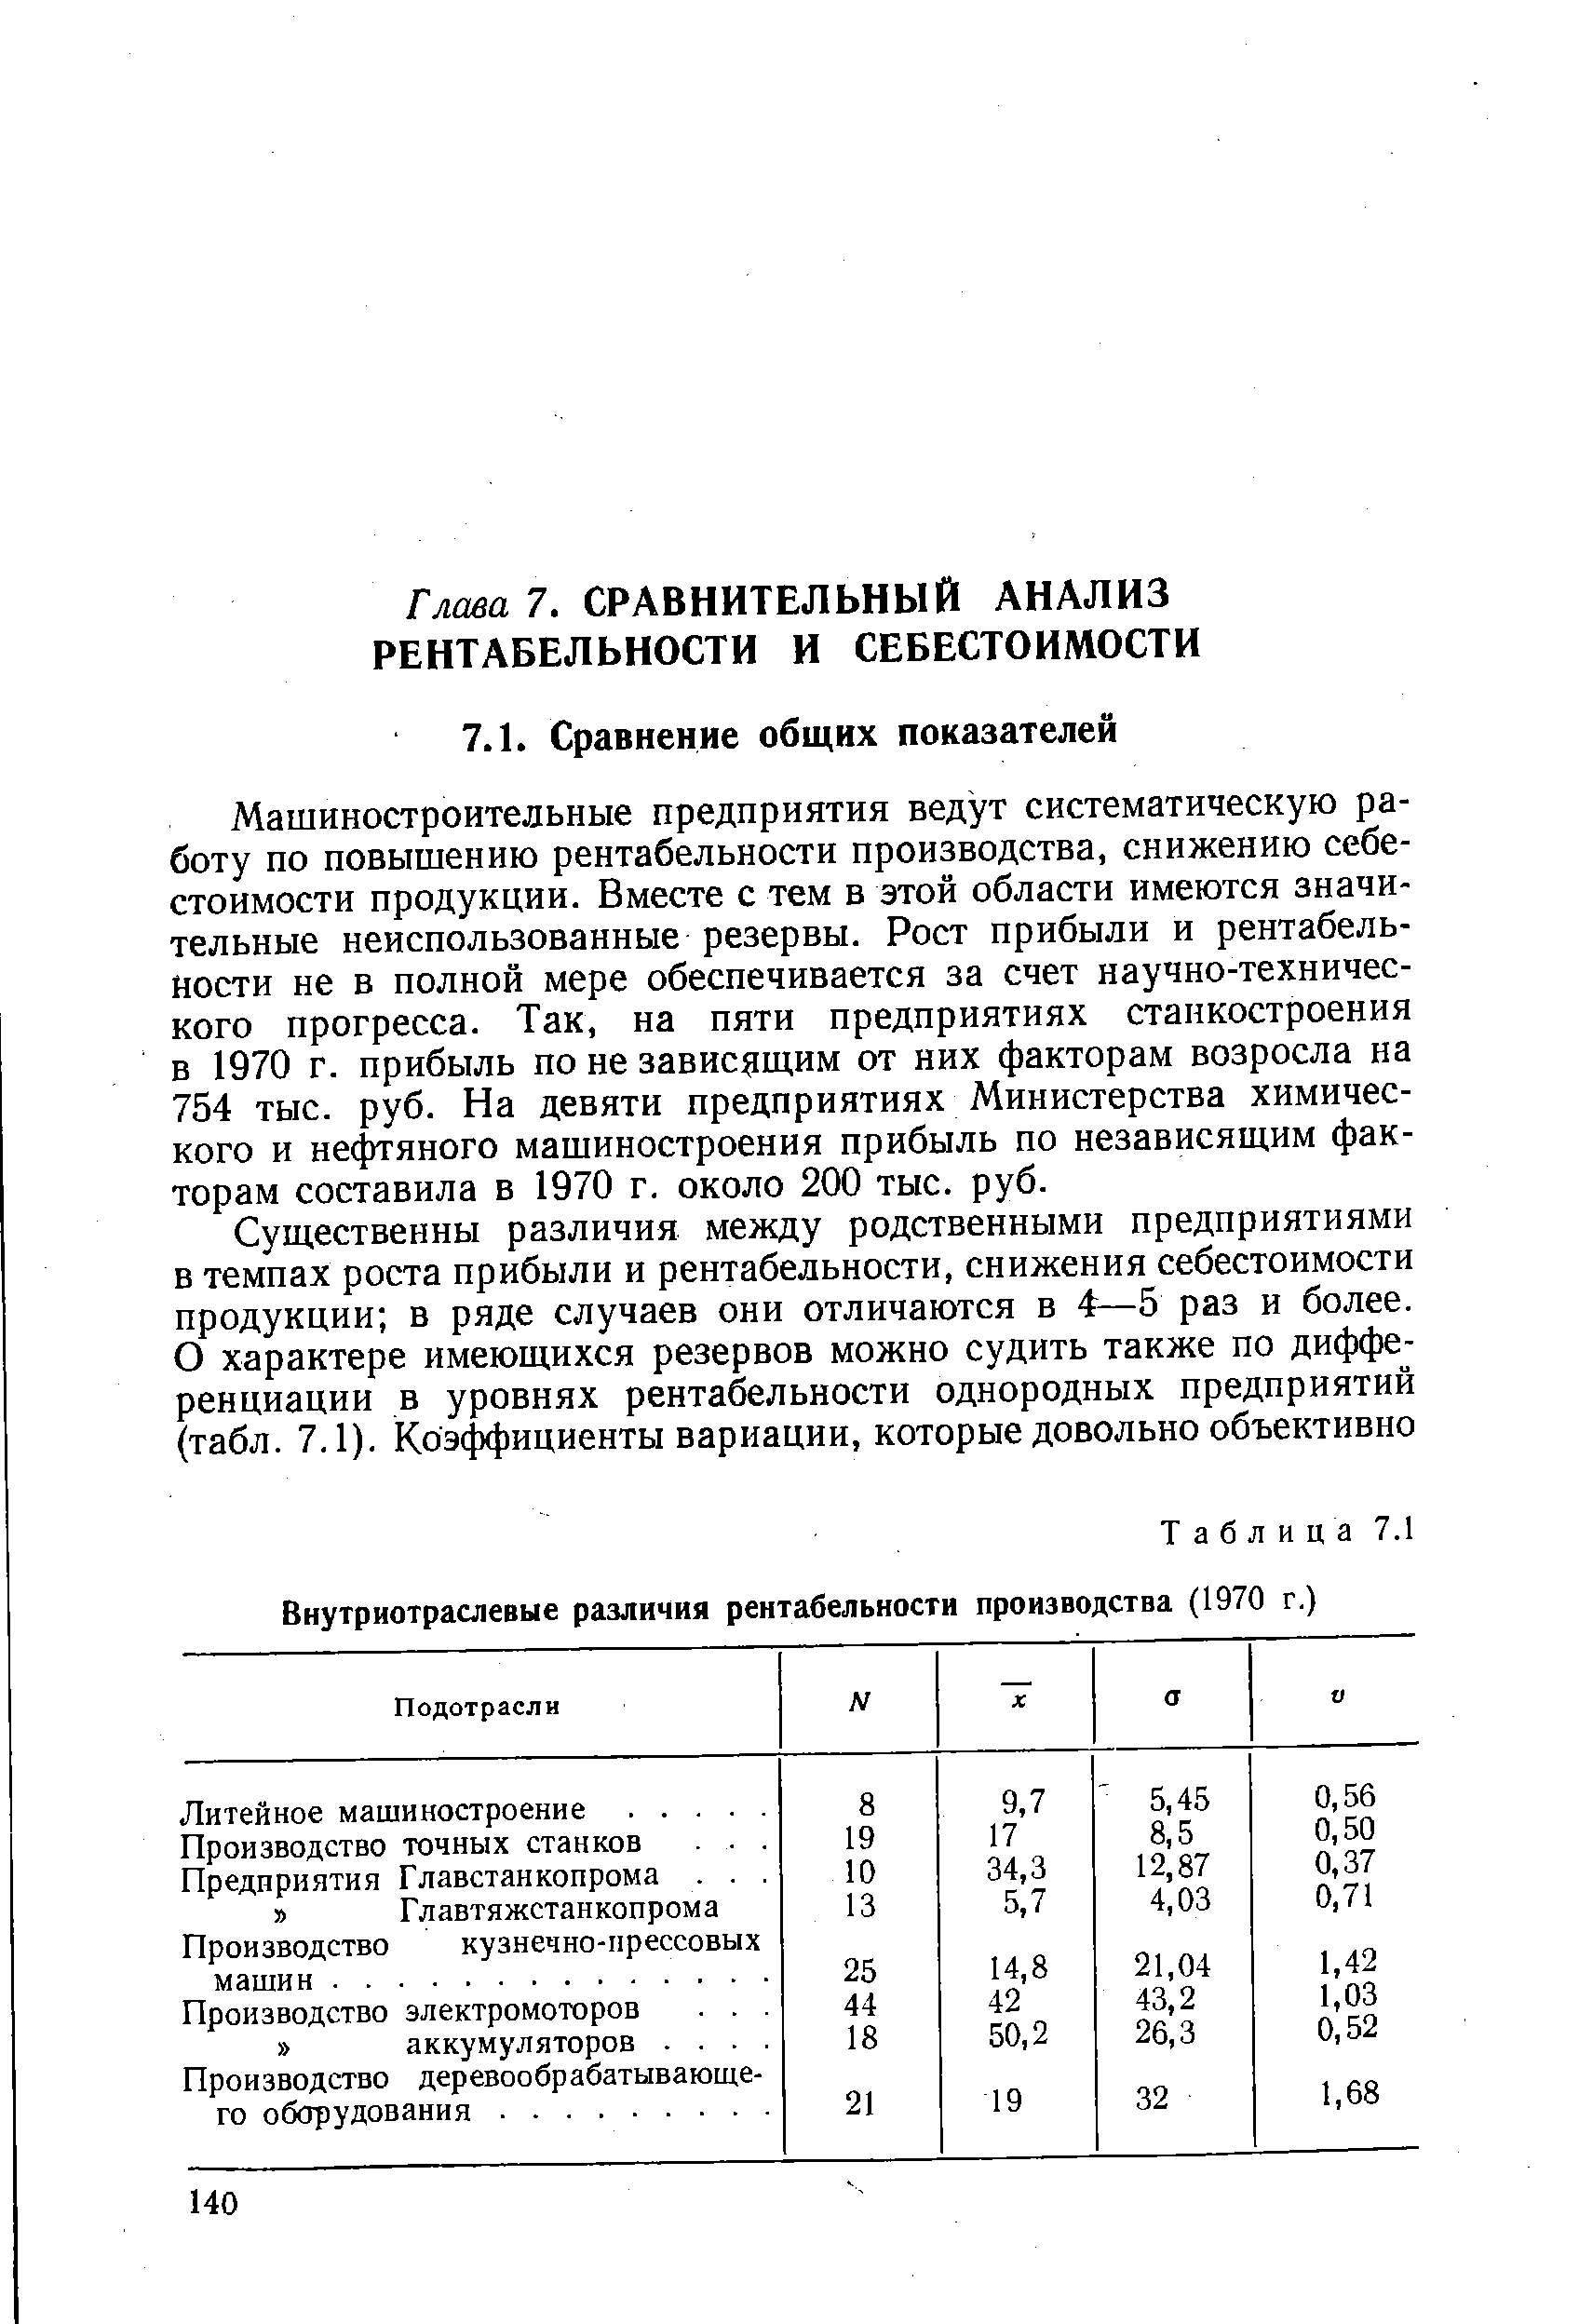 Таблица 7.1 Внутриотраслевые различия рентабельности производства (1970 г.)
